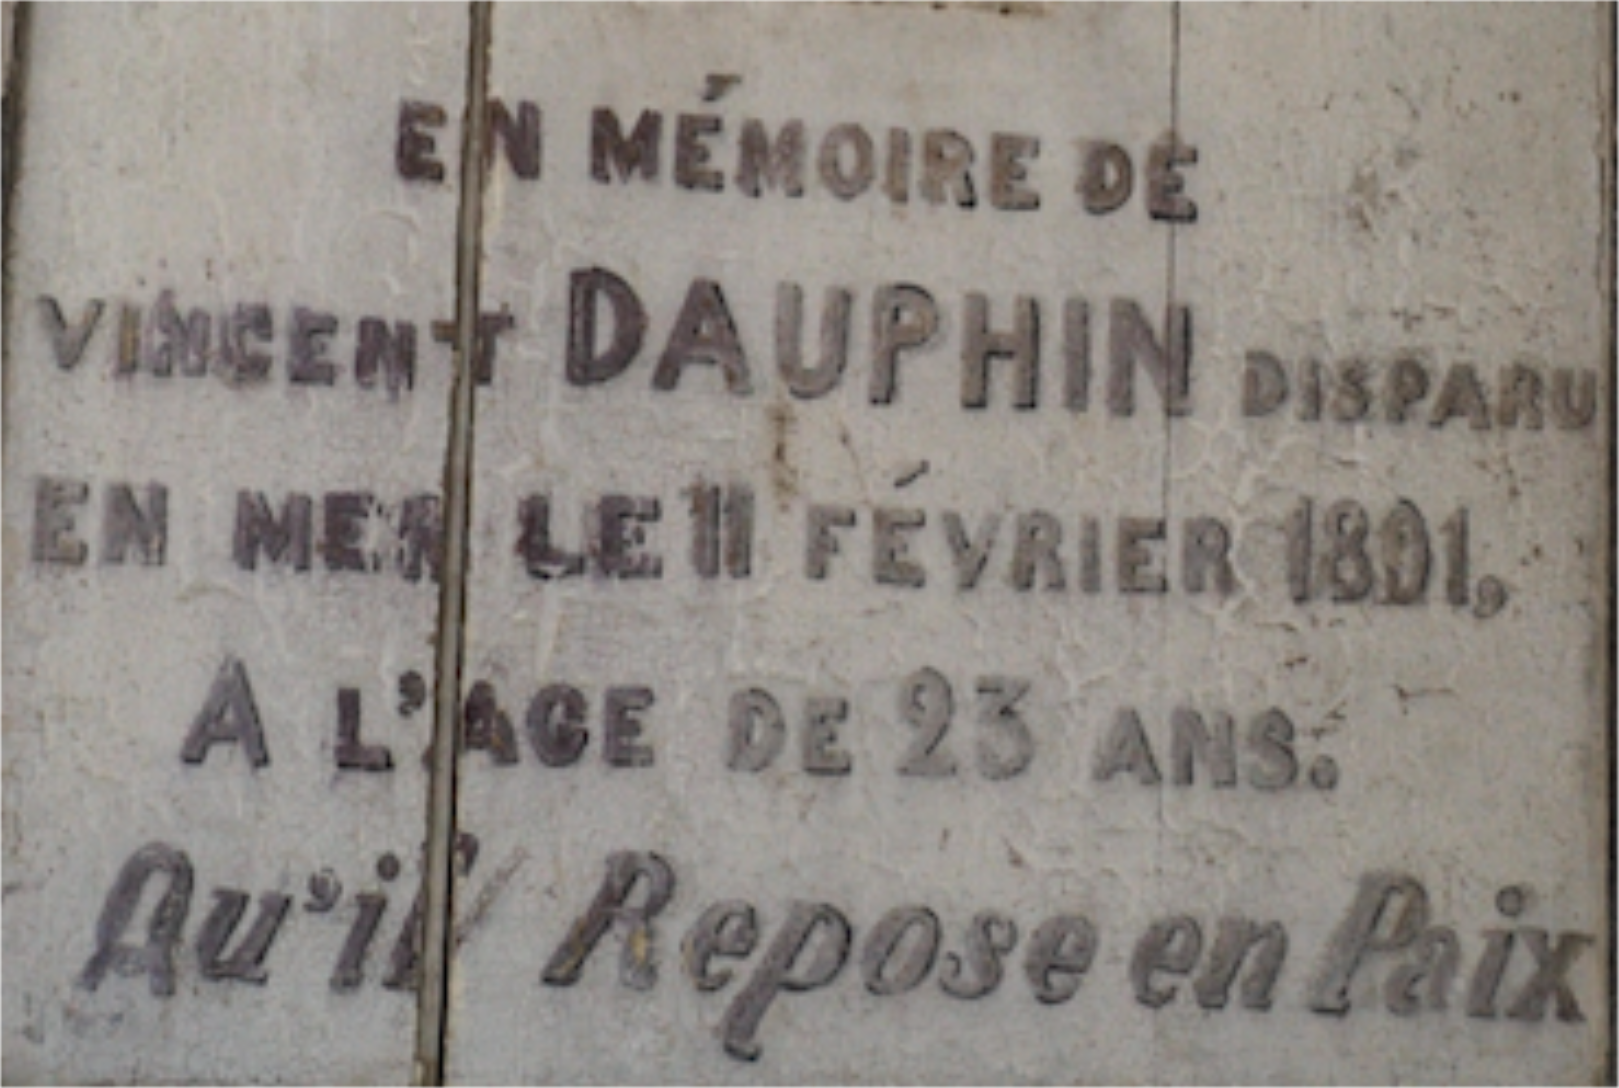 Mémoiore de Vincent Dauphin